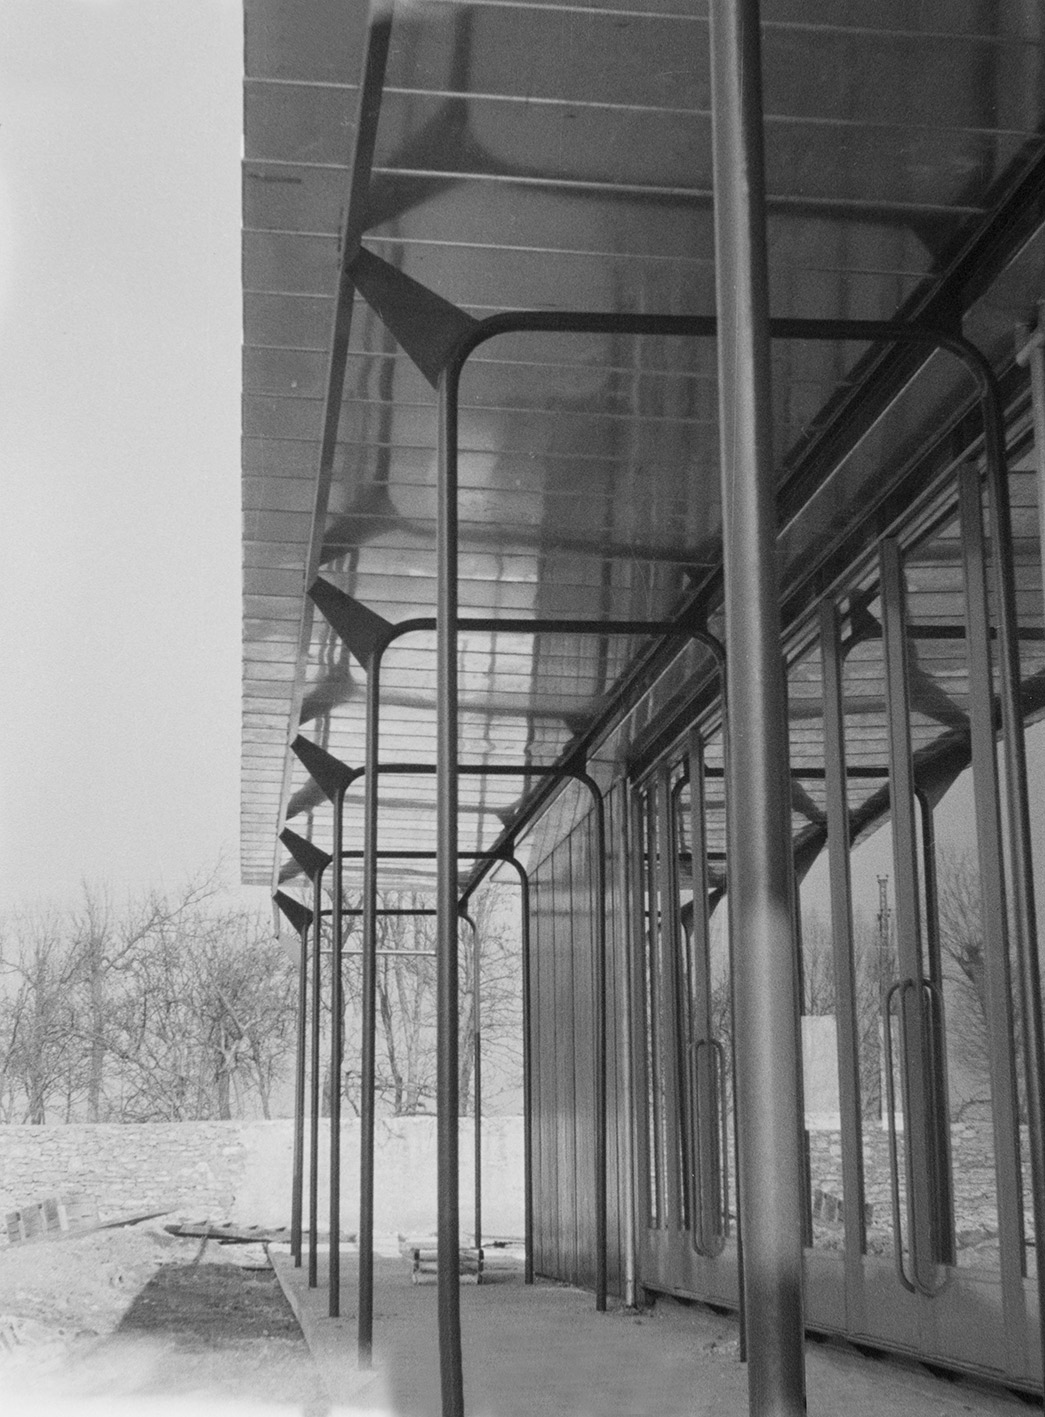 School for glassmaking apprentices, Croismare, 1948 (Jean Prouvé, with architect Henri Prouvé).